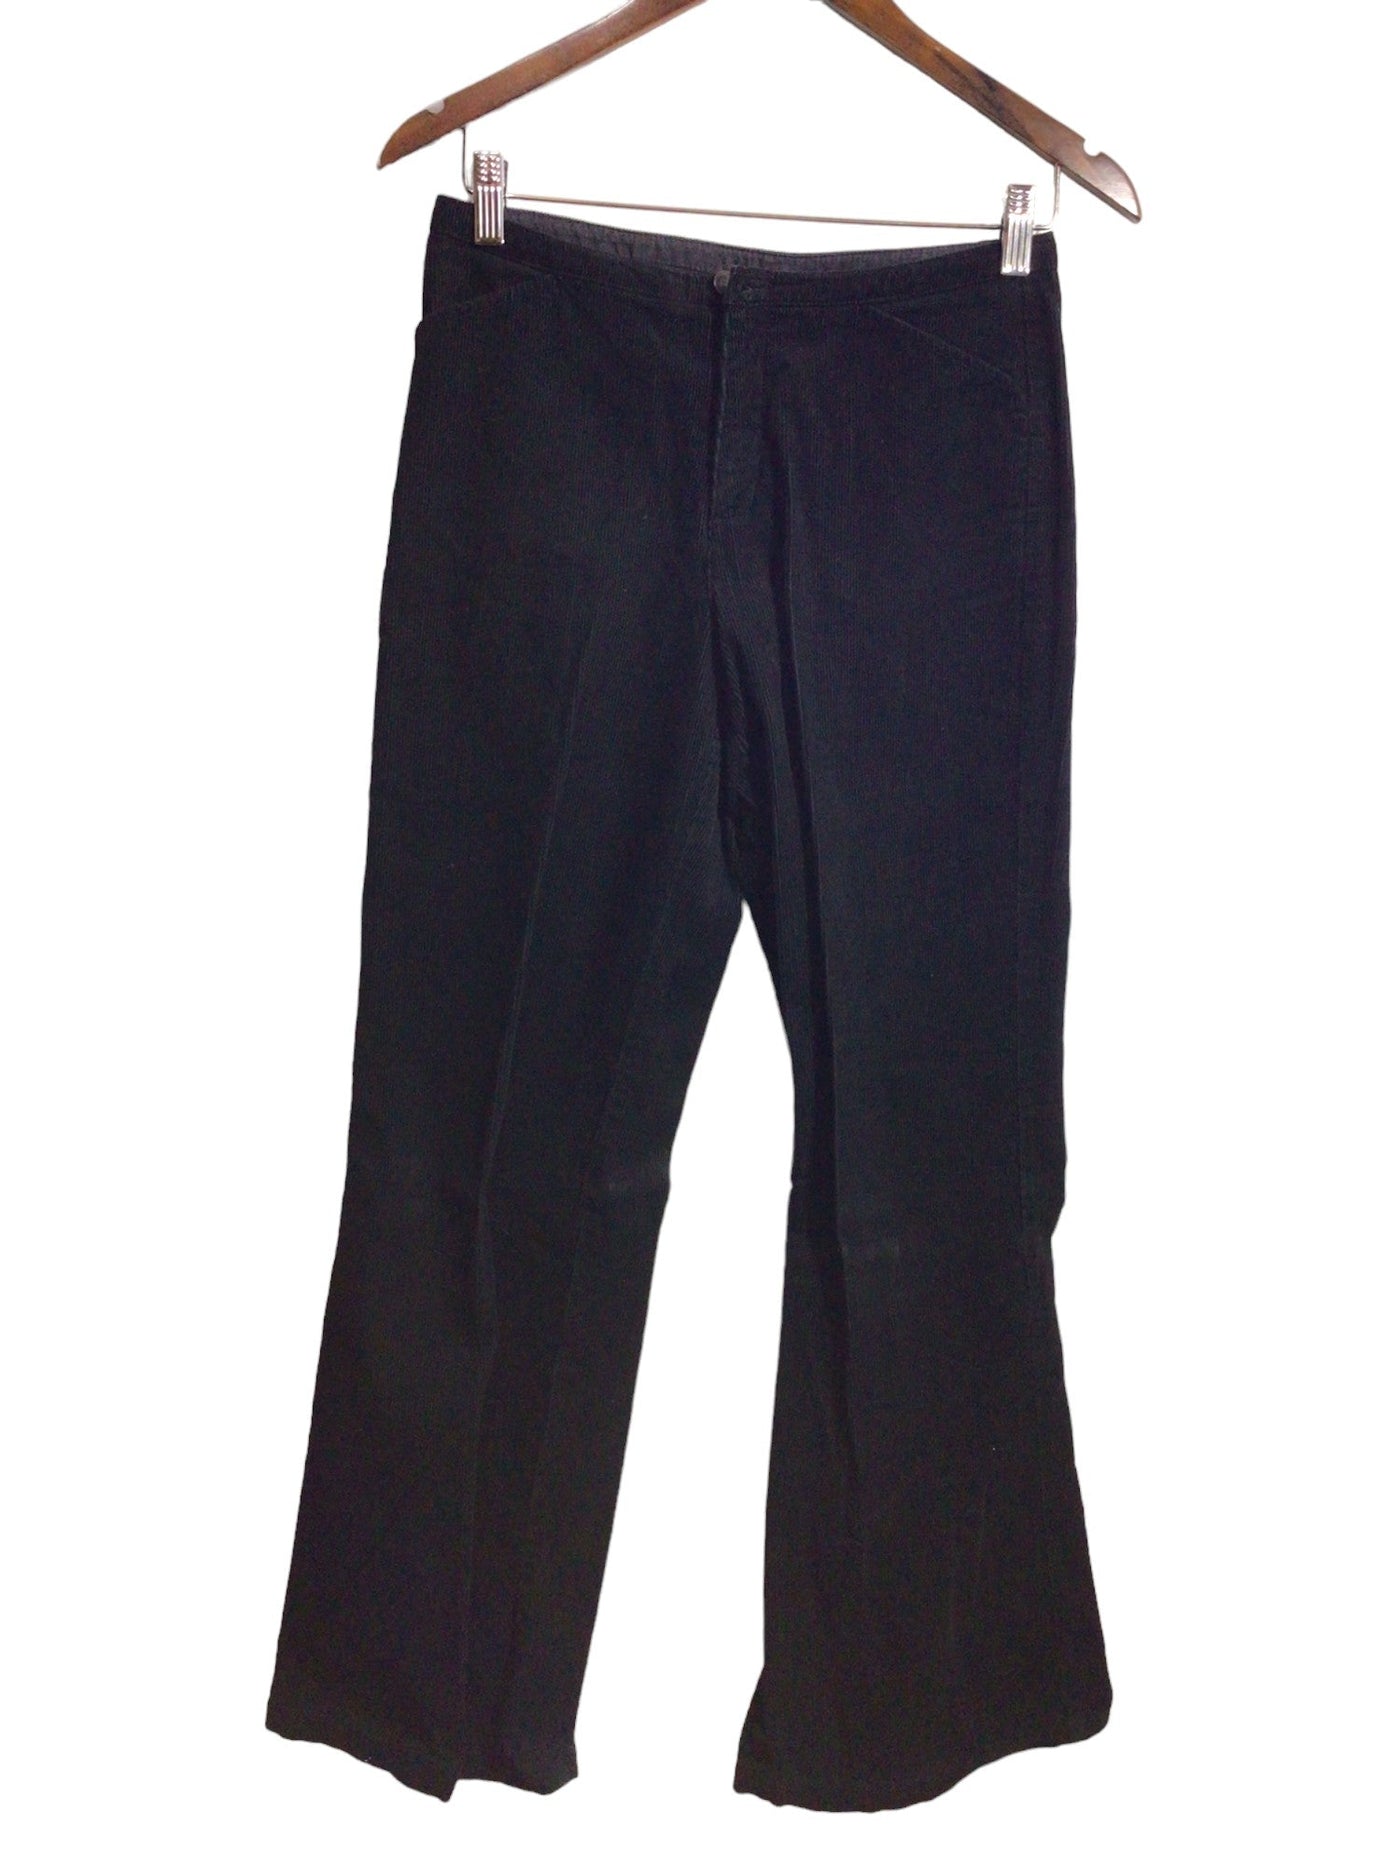 ESPRIT Women Work Pants Regular fit in Black - Size 4 | 26.99 $ KOOP